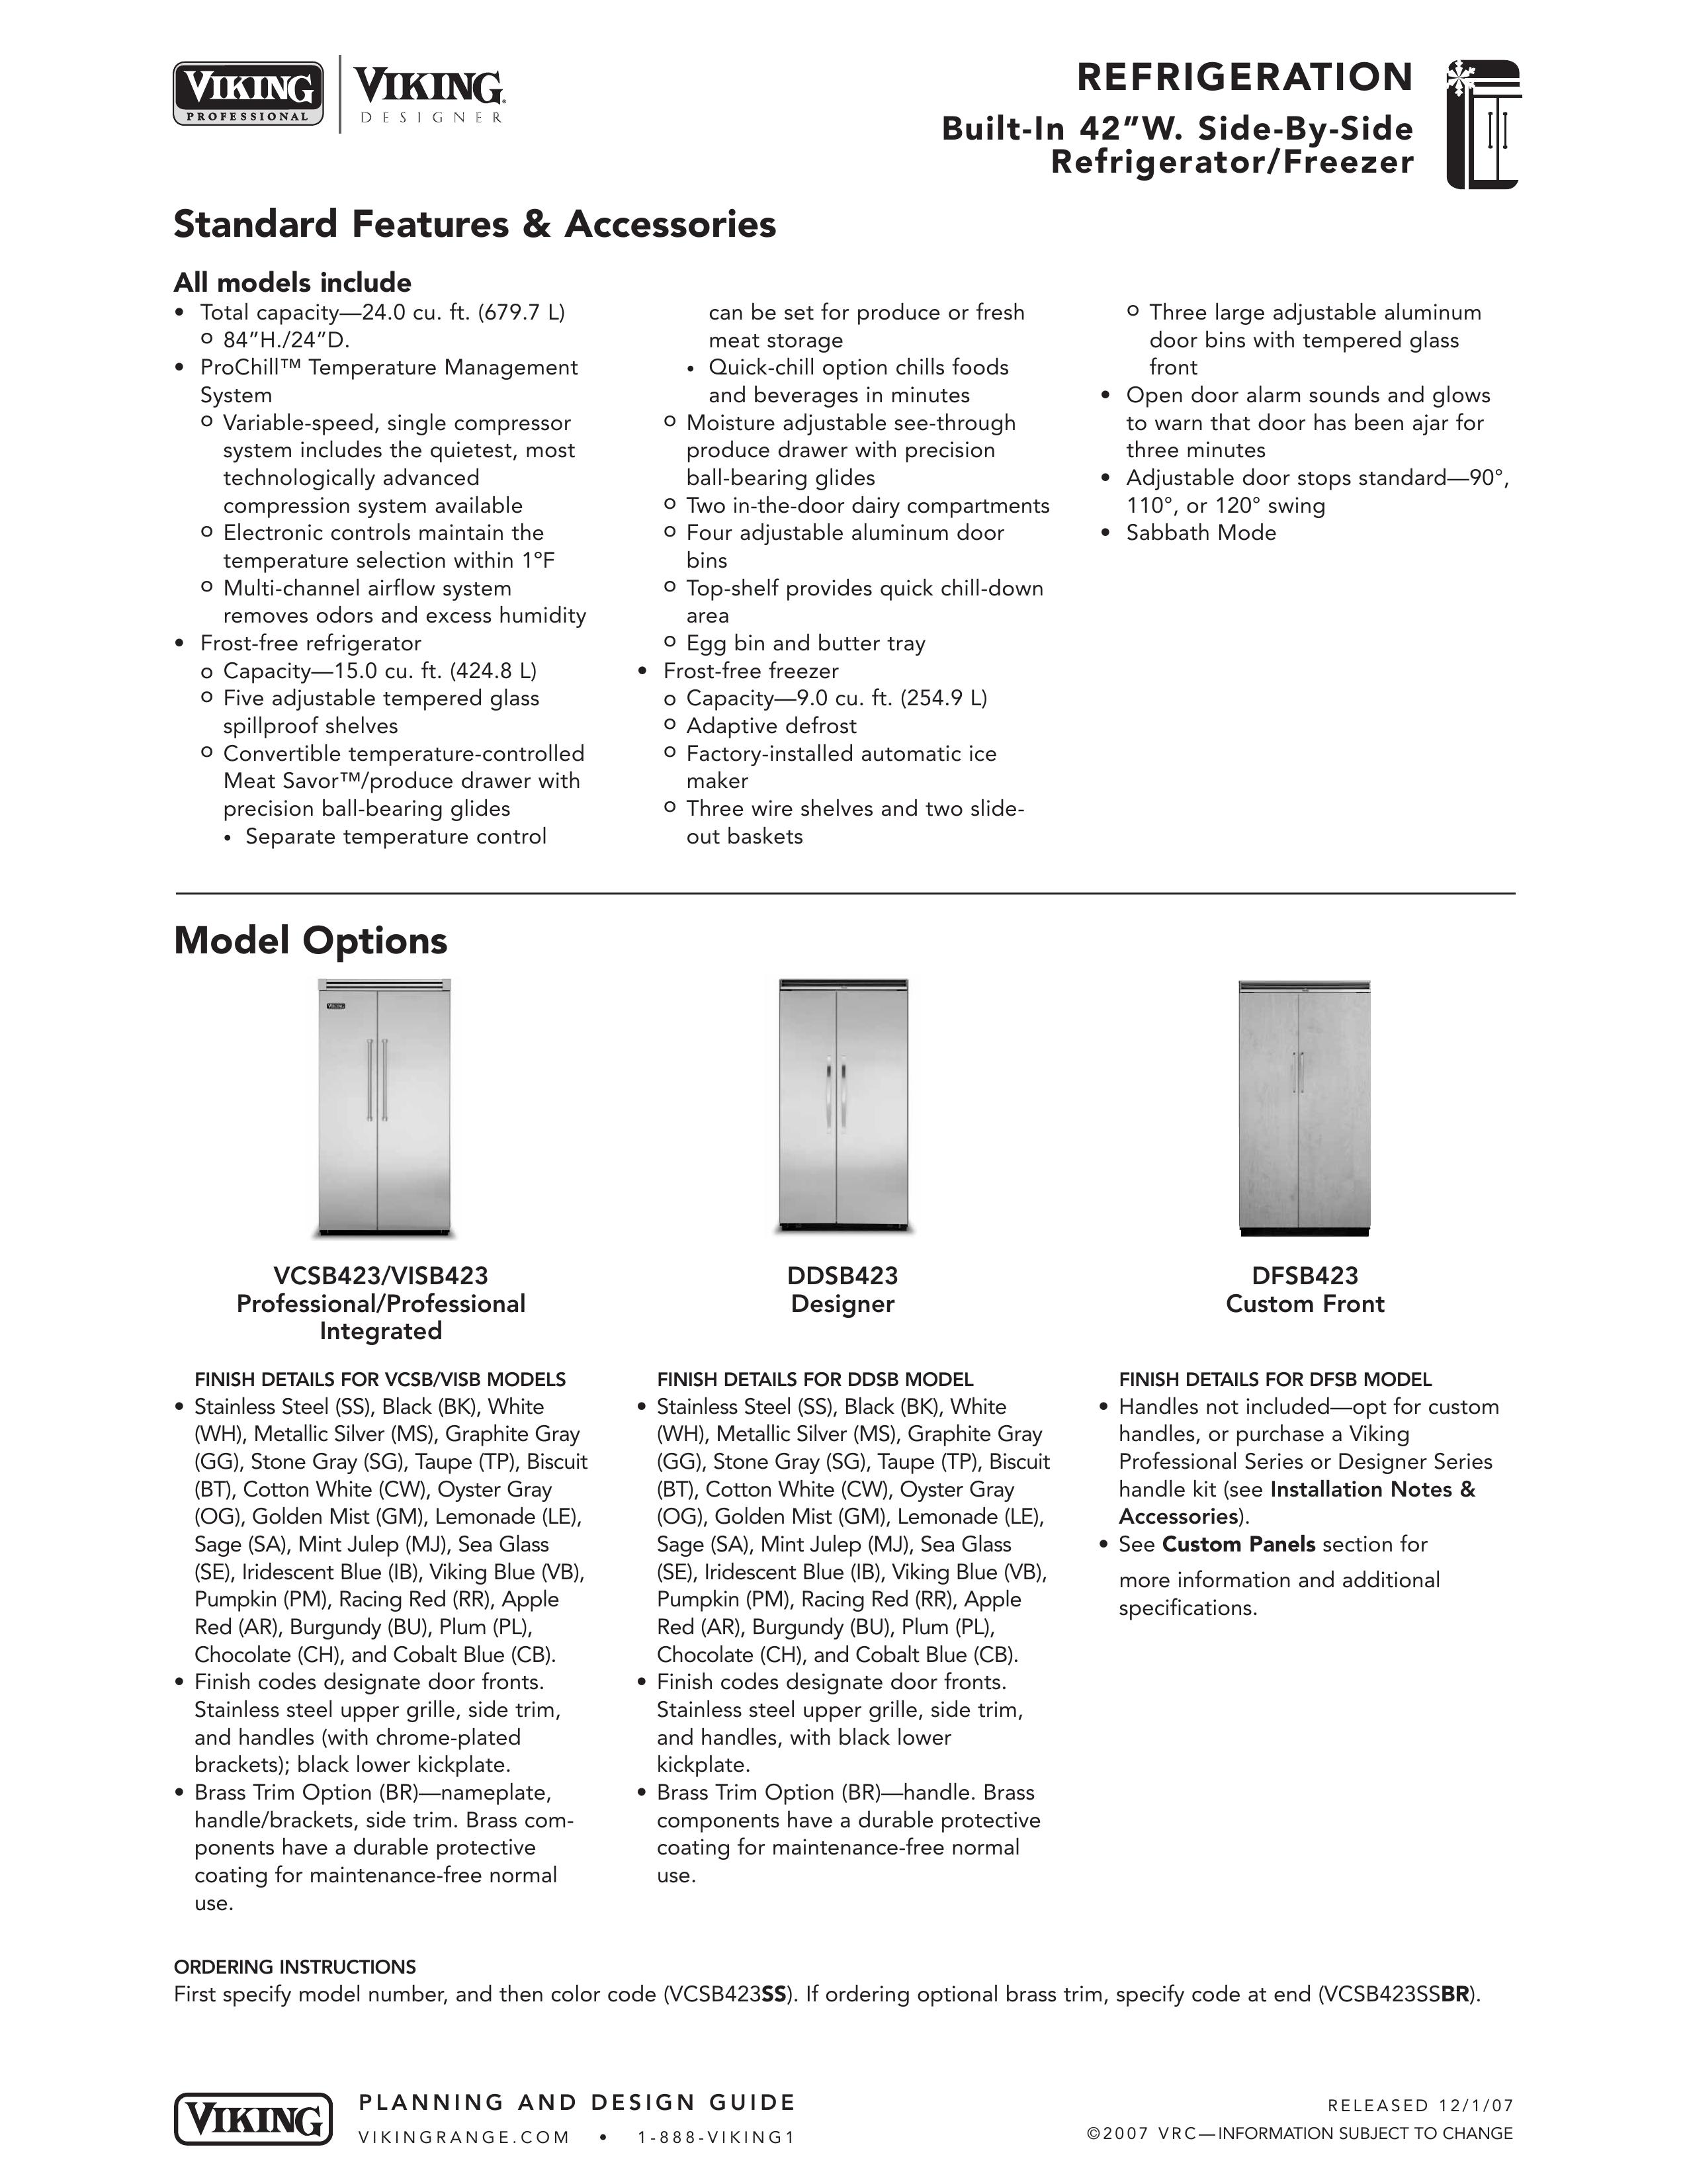 Viking DFSB423 Refrigerator User Manual